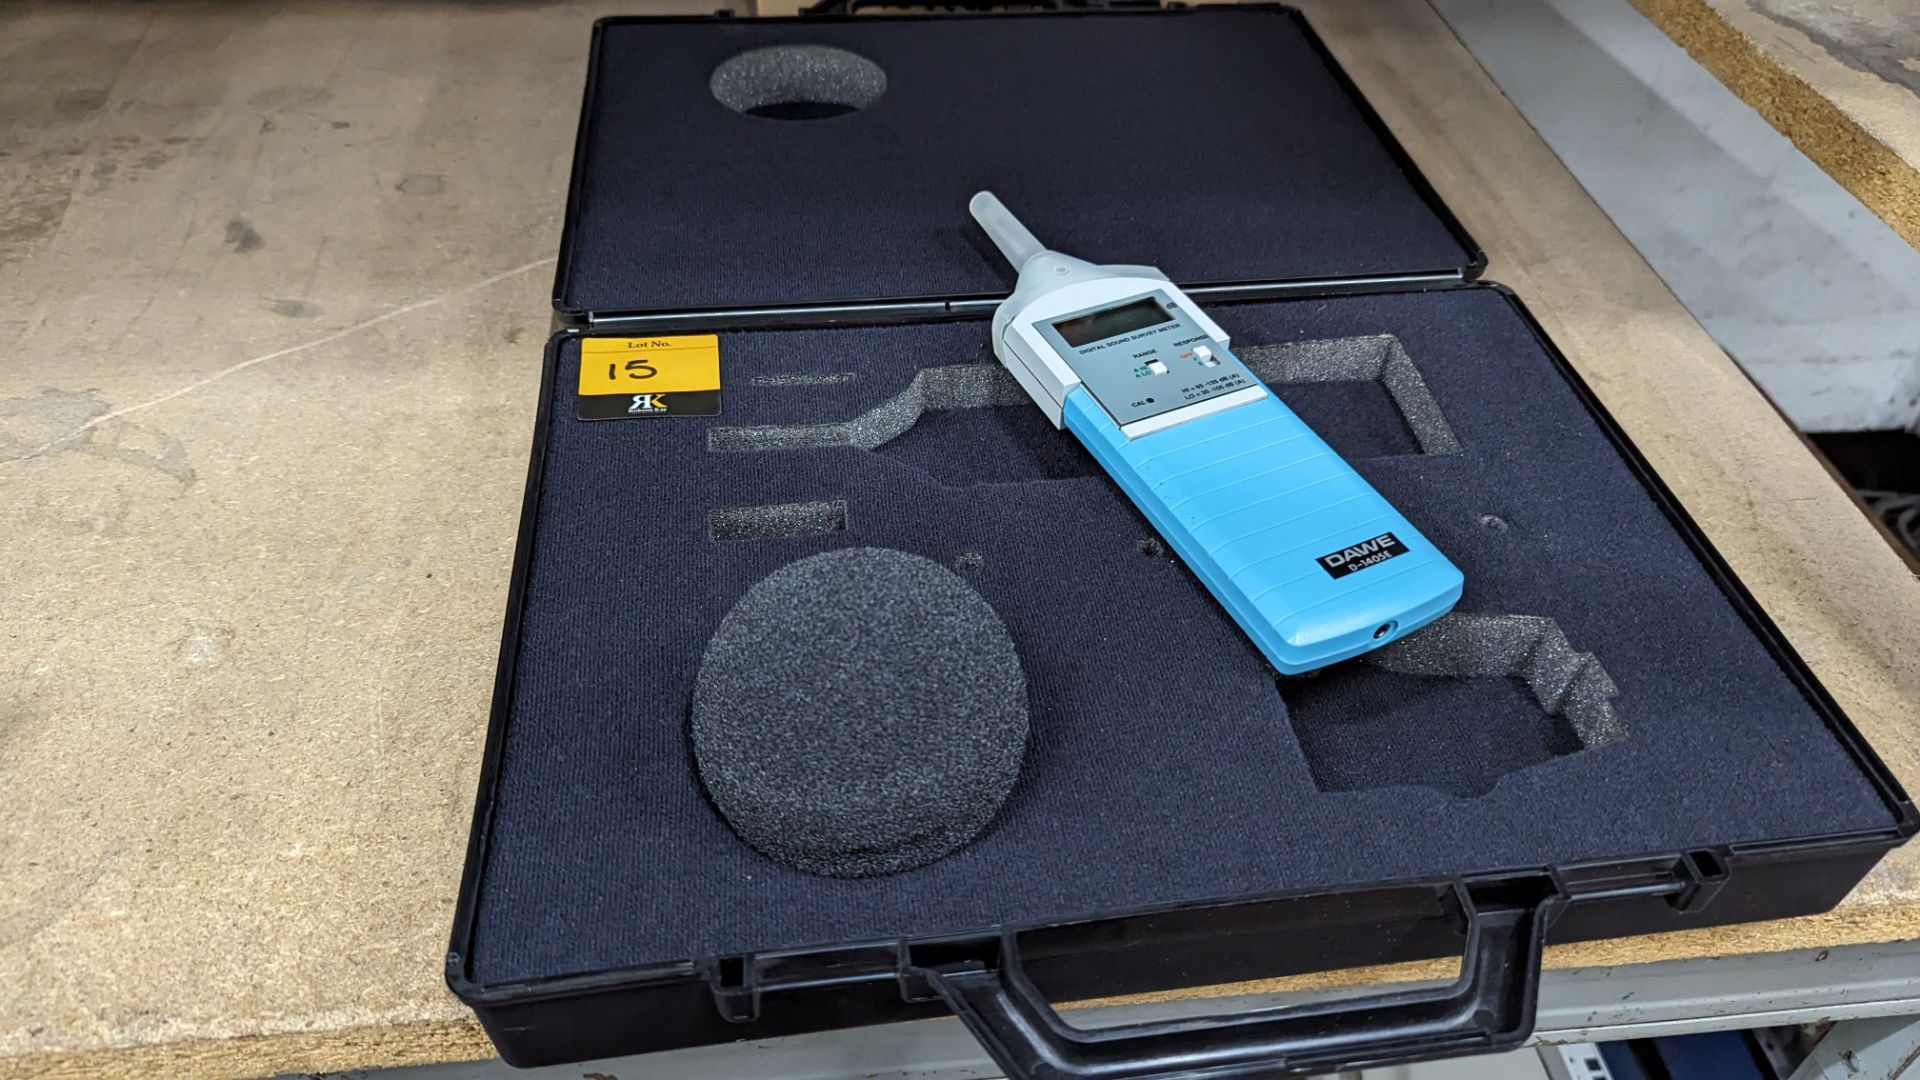 DAWE Instruments digital sound survey meter model D-1405E. Includes transit case